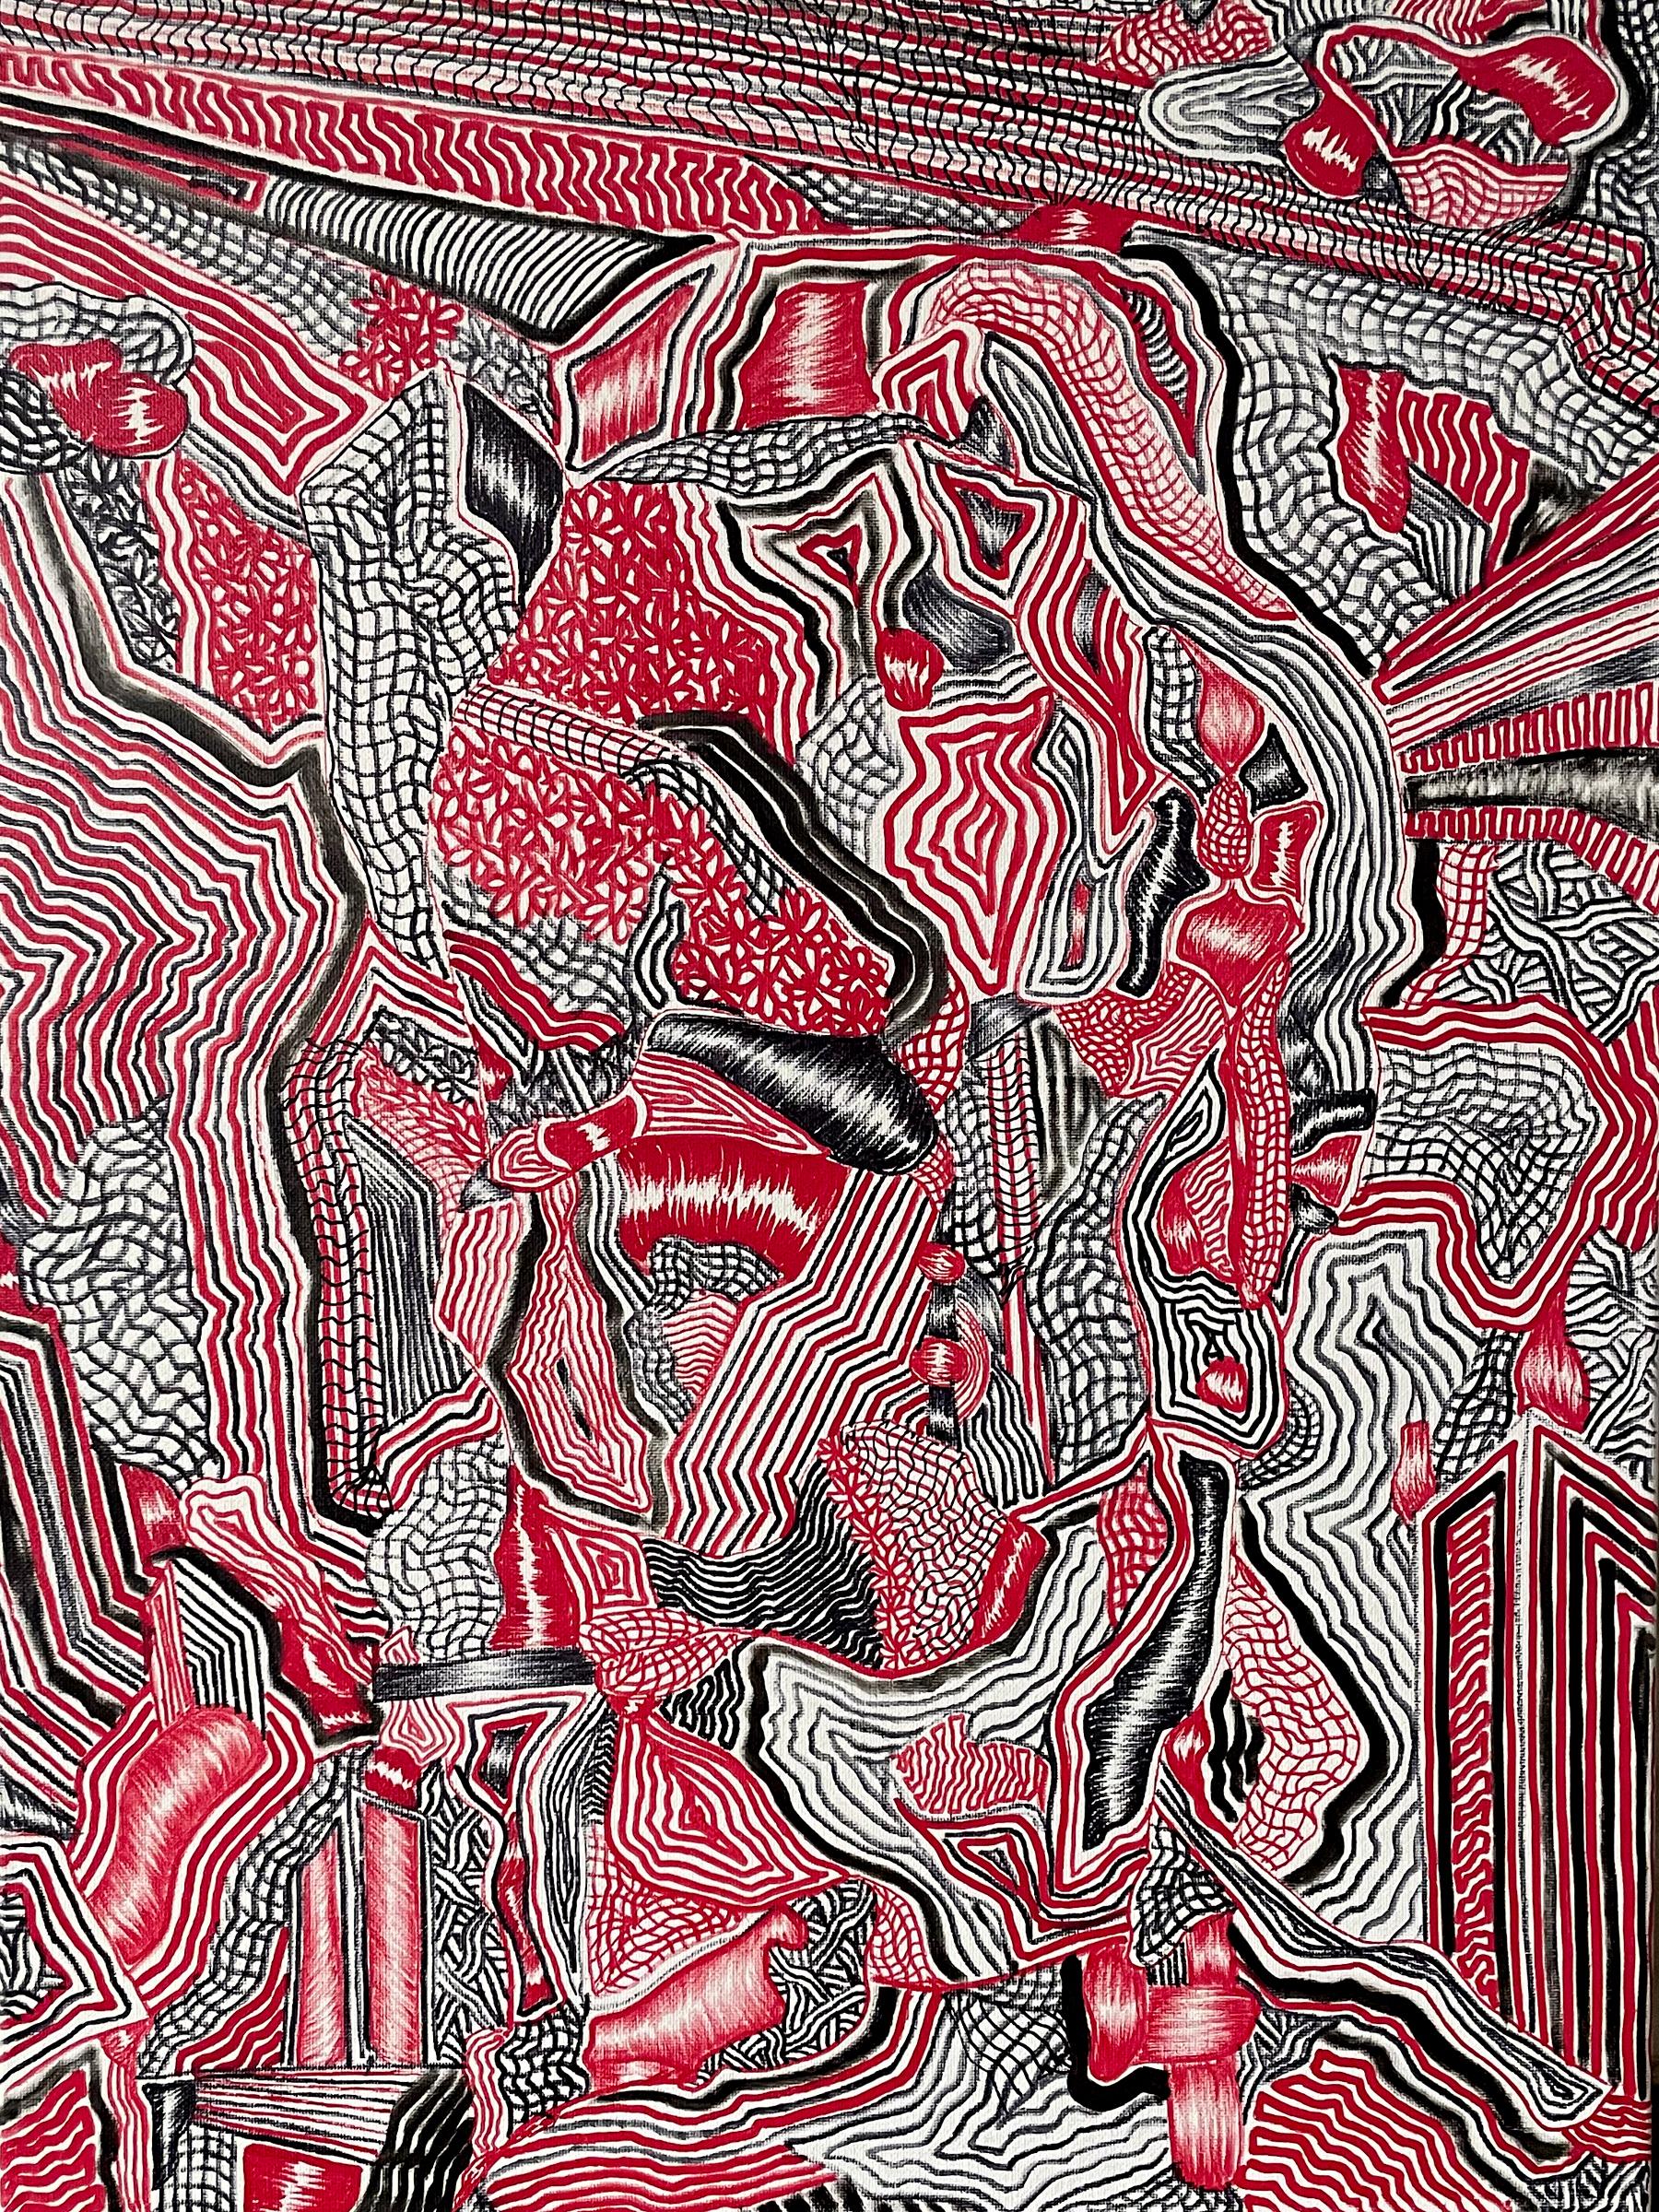 Encre permanente sur toile

David Paul Kaye est un artiste contemporain américain né en 1982 qui vit et travaille à New York, aux États-Unis. En mettant l'accent sur des lignes vibrantes et des compositions complexes, Kaye crée des récits captivants